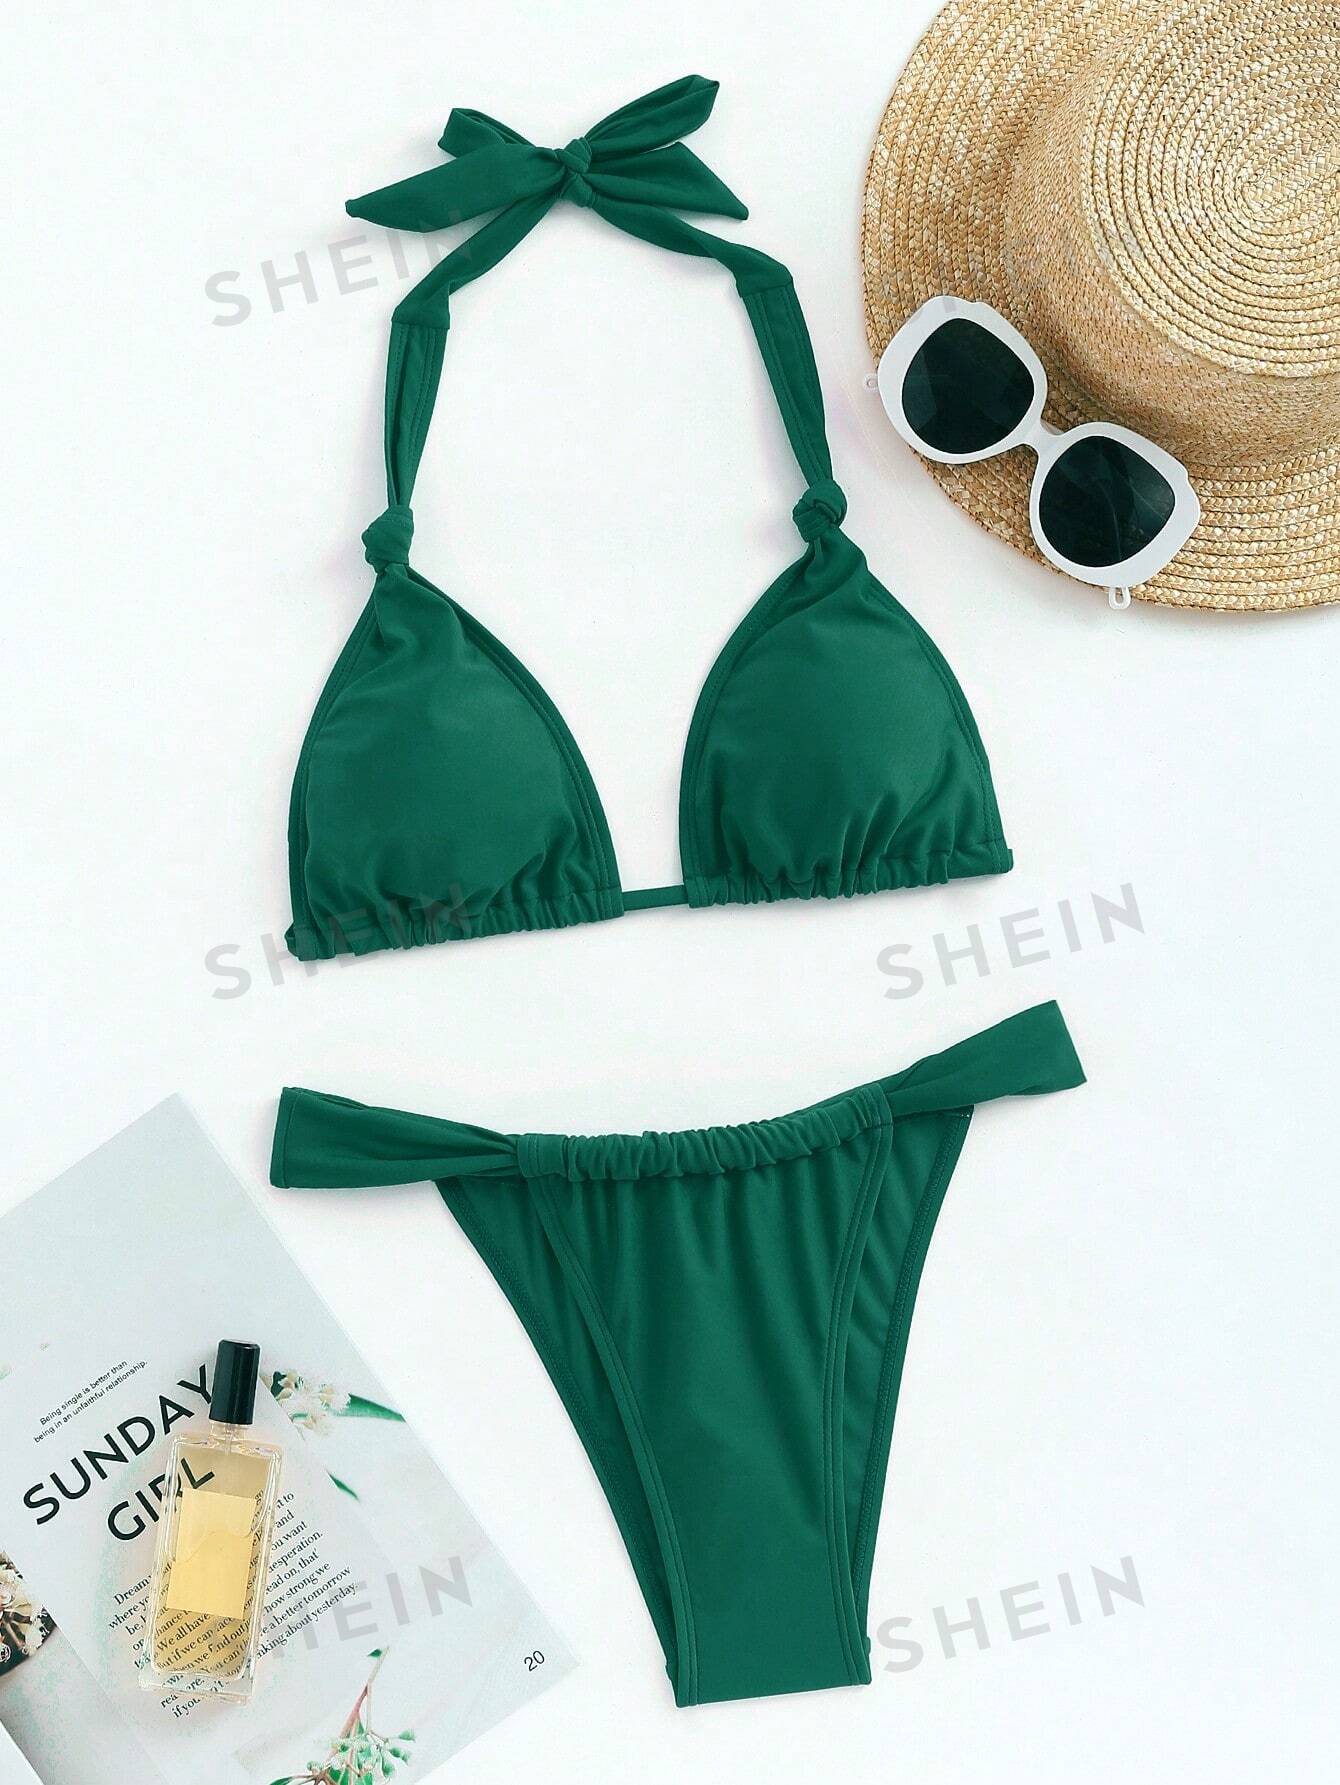 Женский однотонный купальник, темно-зеленый женский купальник бикини треугольный купальный костюм пляжная одежда